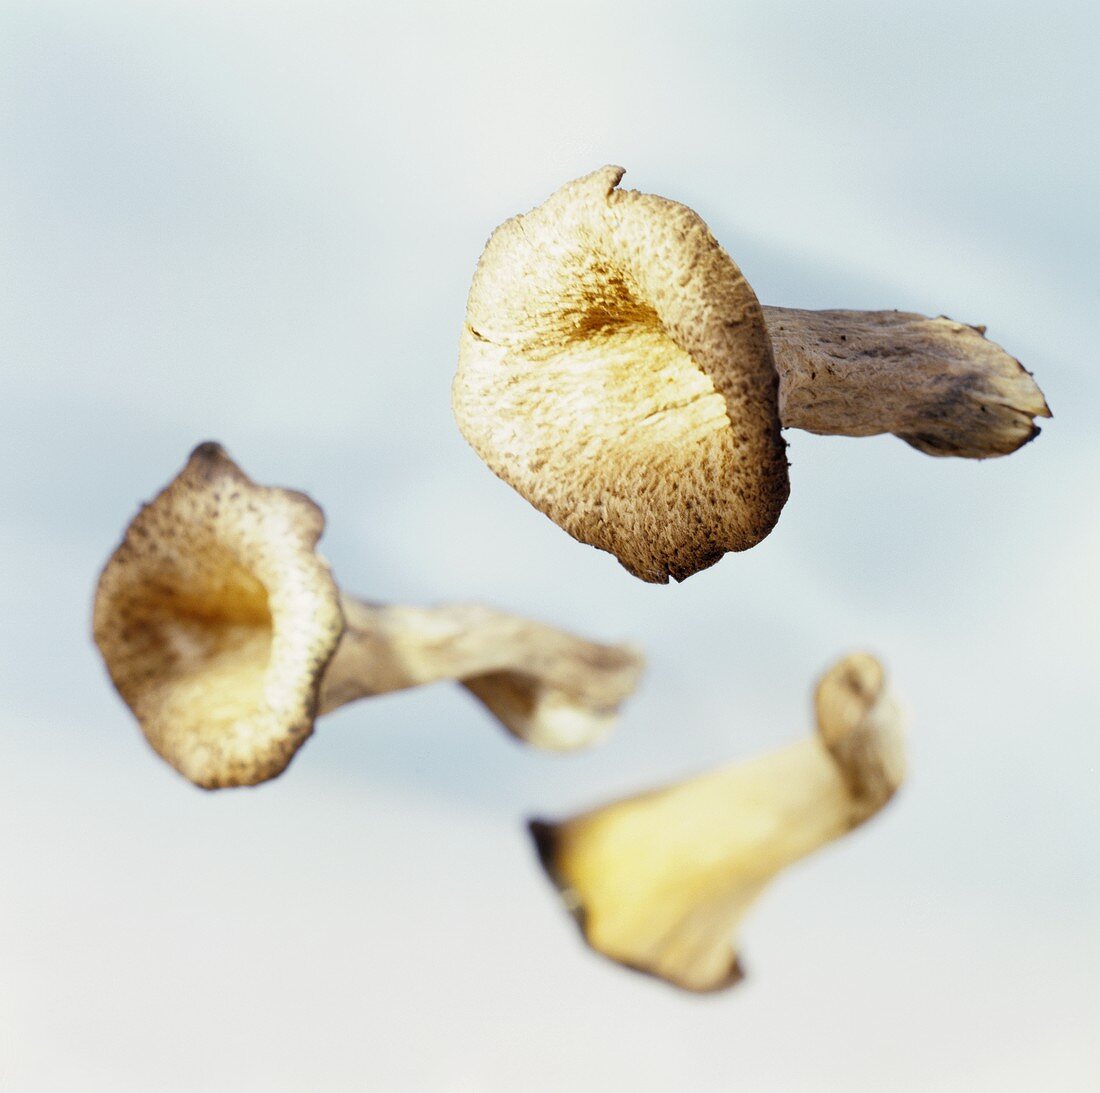 Horn of plenty mushrooms